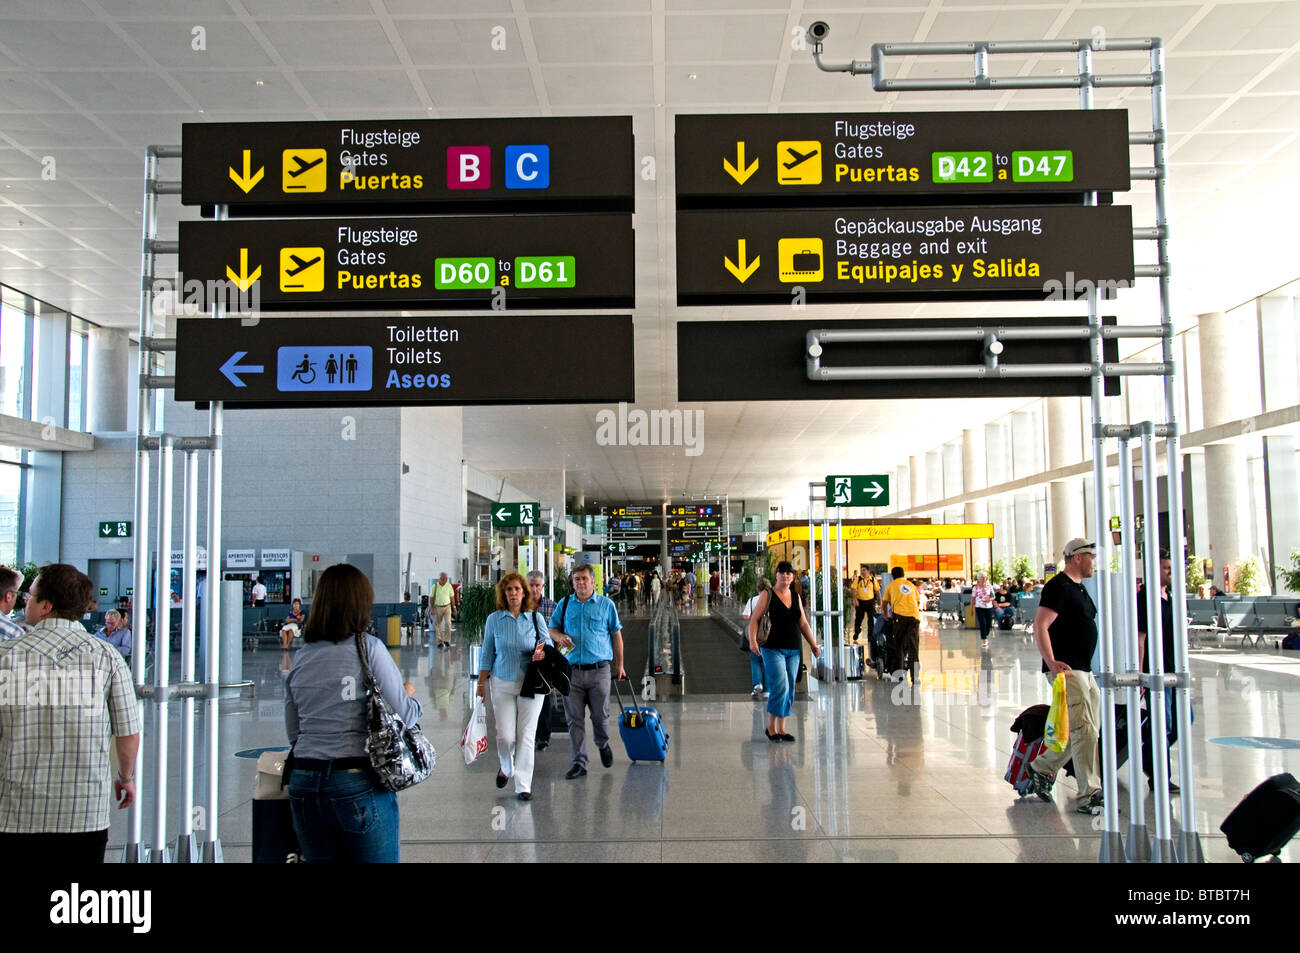 L'aéroport de malaga andalousie espagne Information Sign Banque D'Images